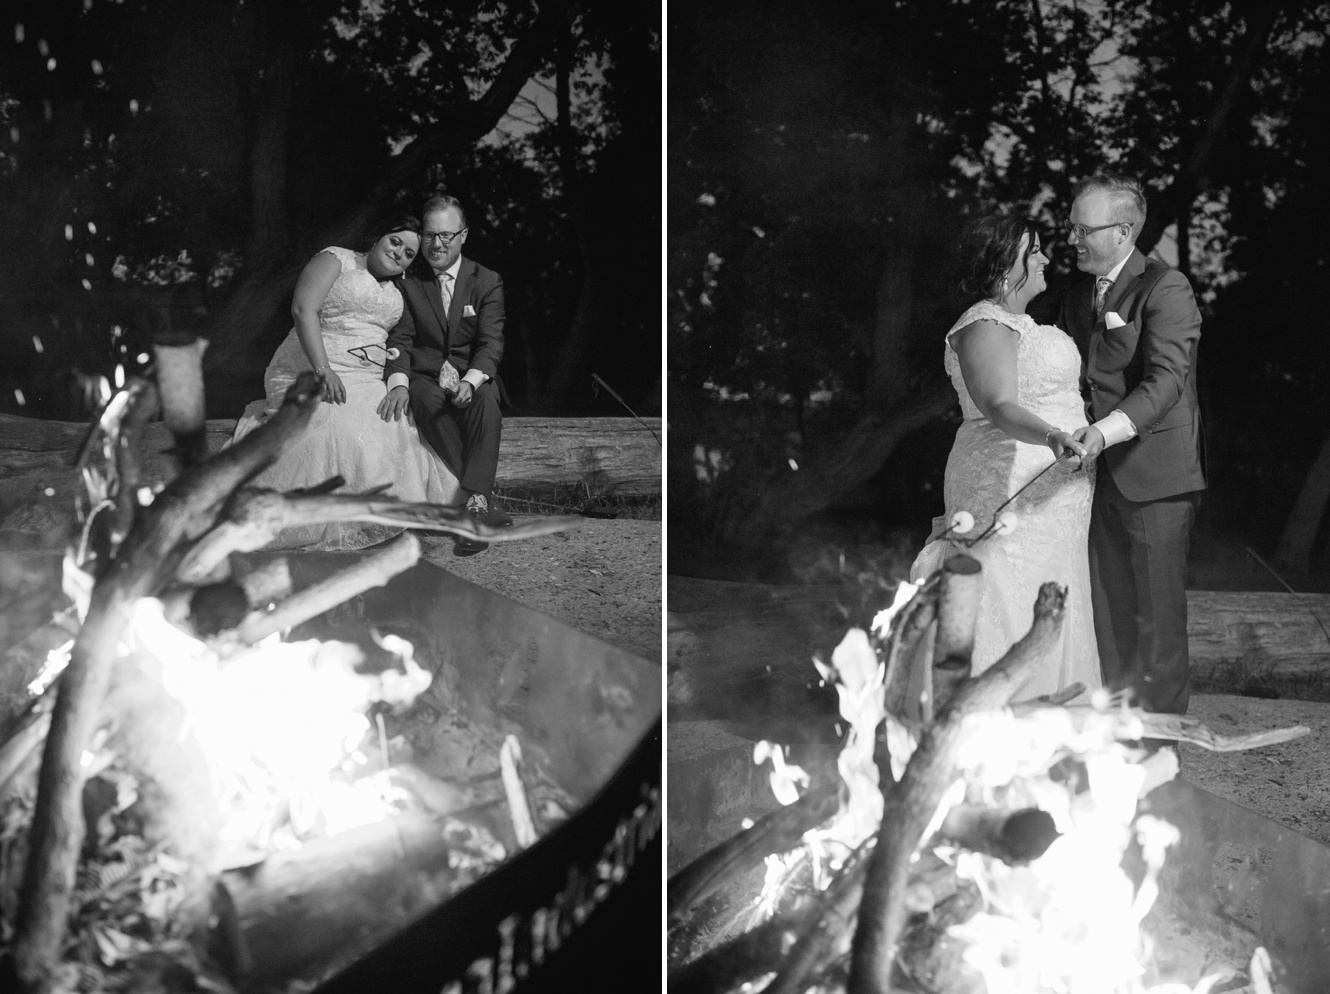 Wedding campfire photos